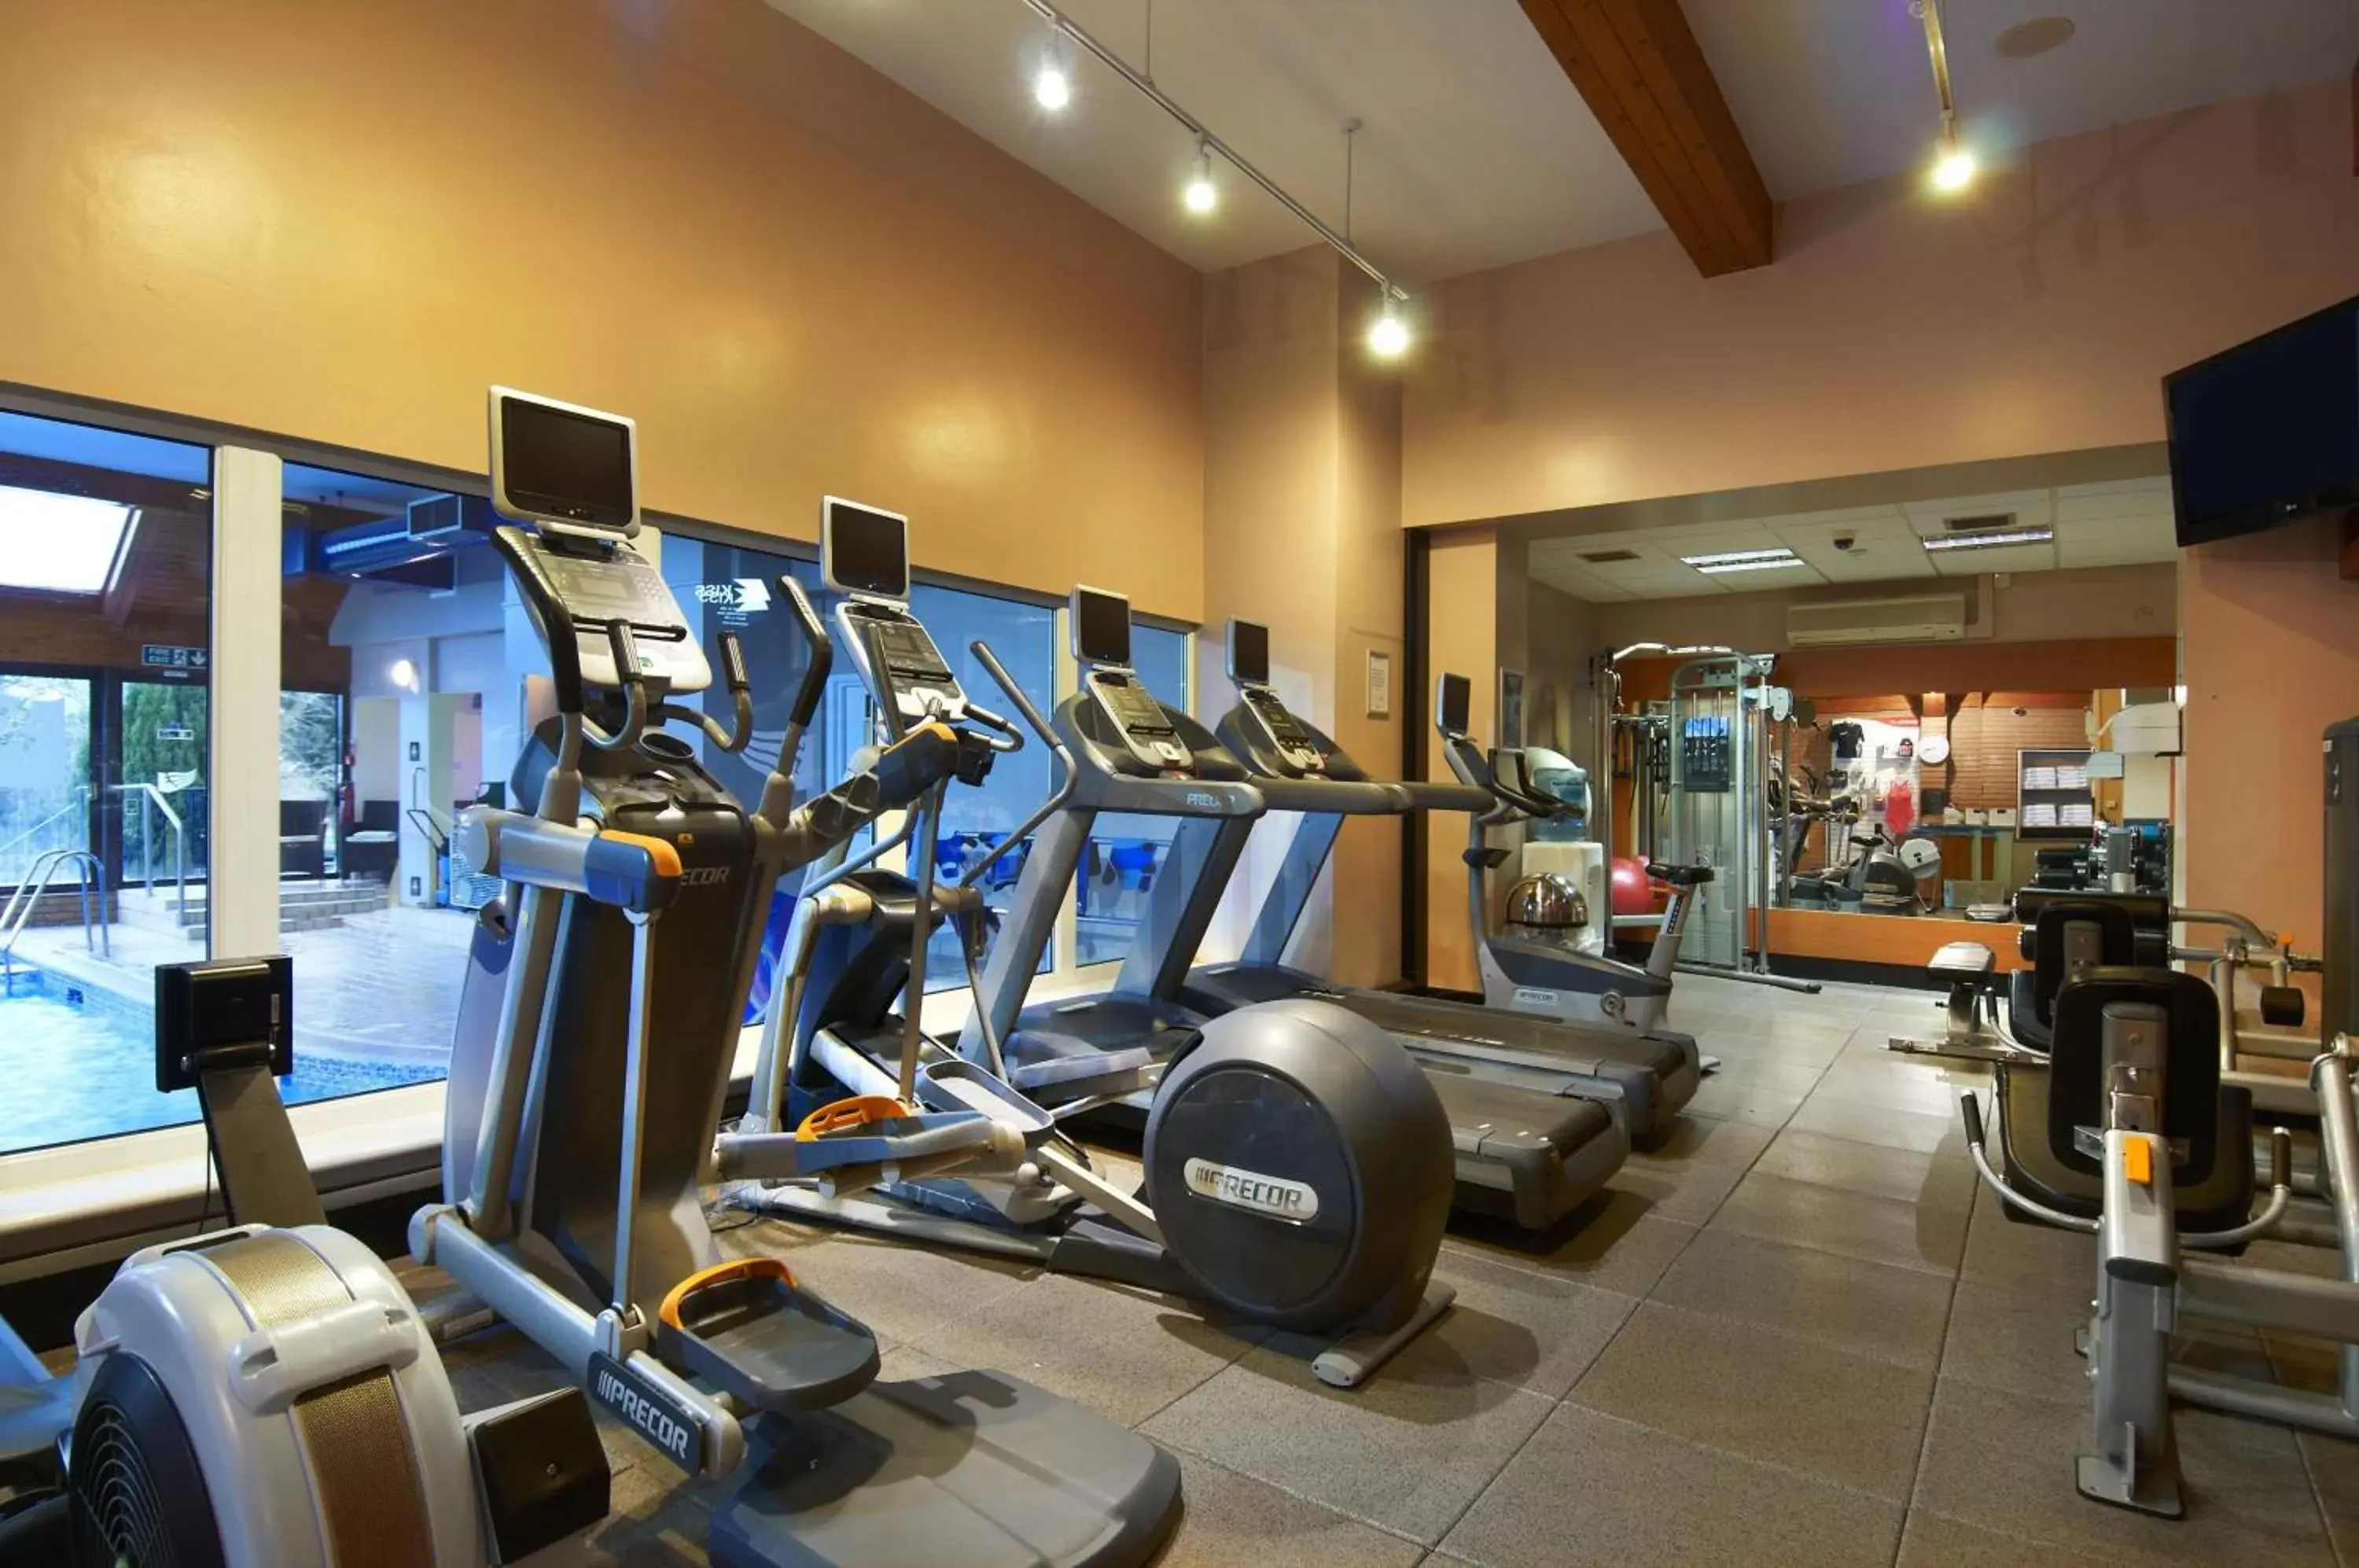 Fitness centre/facilities, Fitness Center/Facilities in Avisford Park Hotel